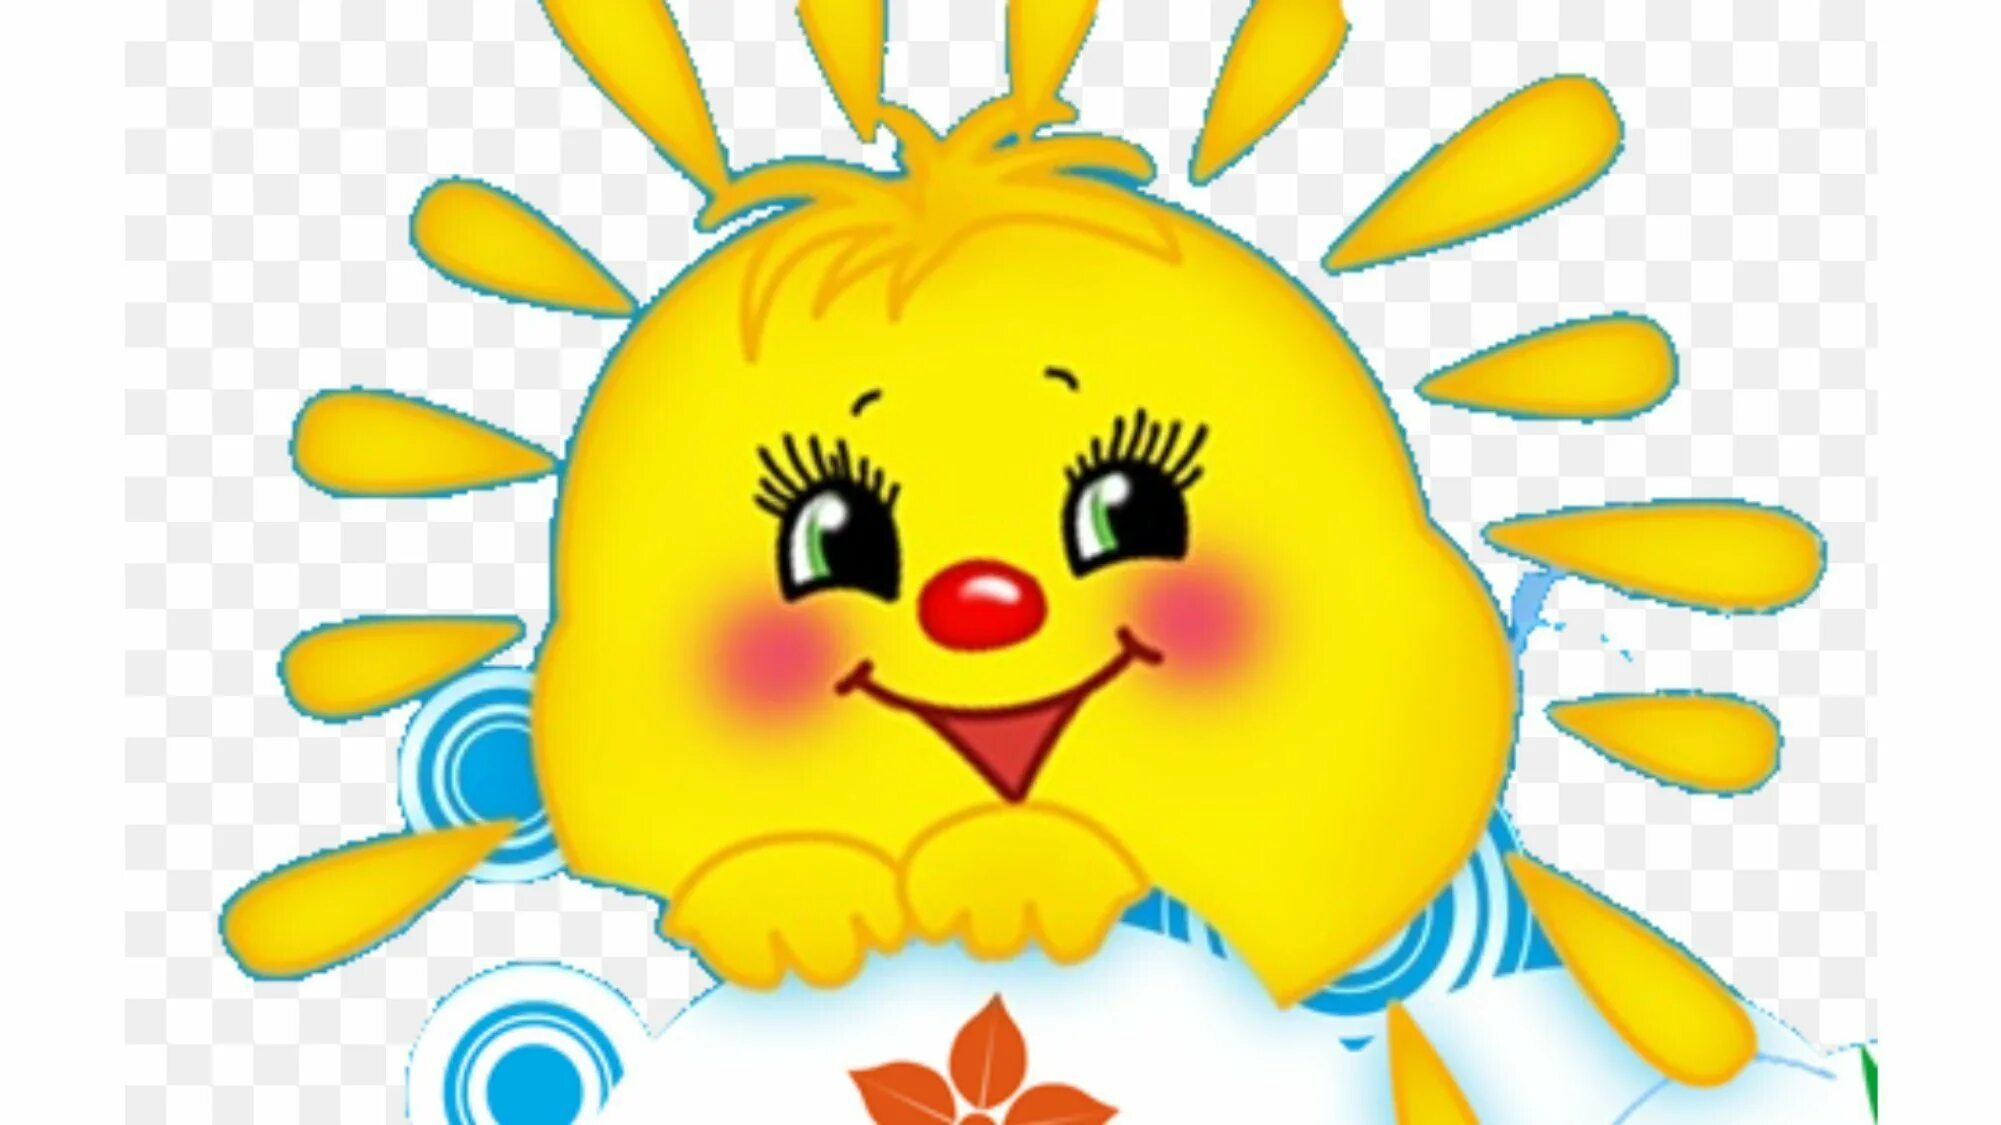 Картинка солнышко. Веселое солнышко. Солнечный зайчик картинки для детей. Глазки для солнышка. Мордочка солнышка.